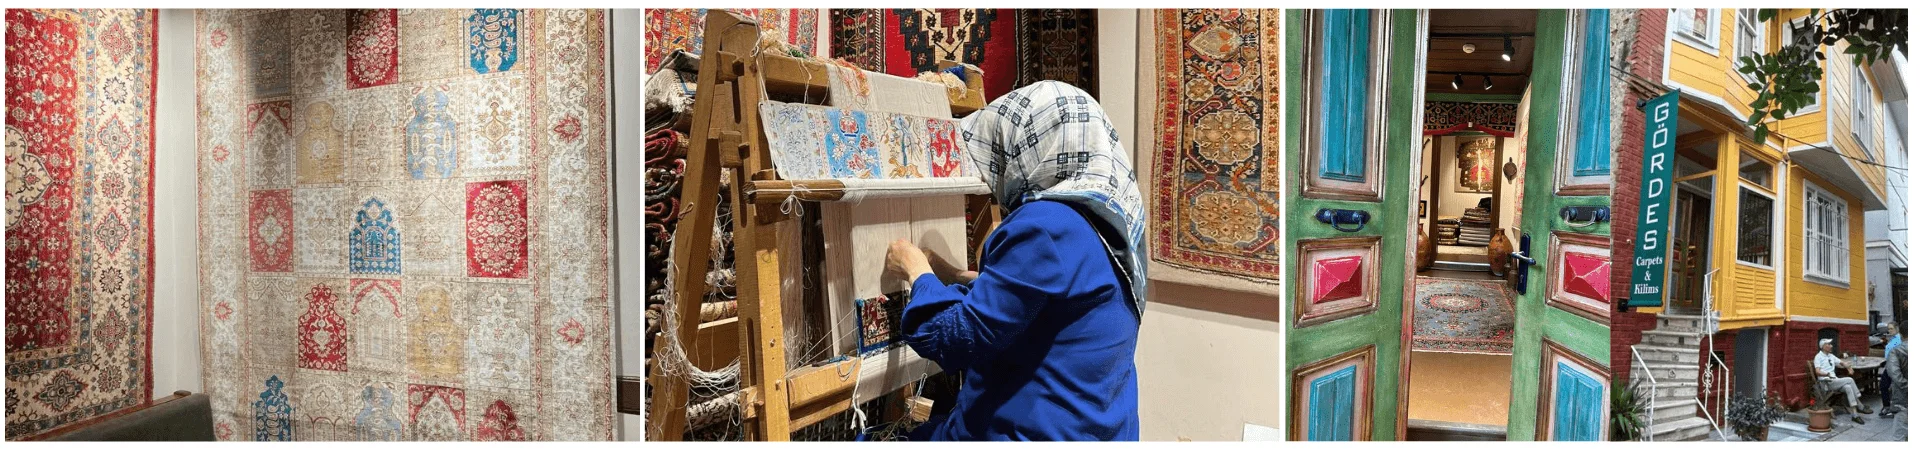 تجربة صناعة السجاد التركي - الكشف عن البراعة الفنية الخالدة